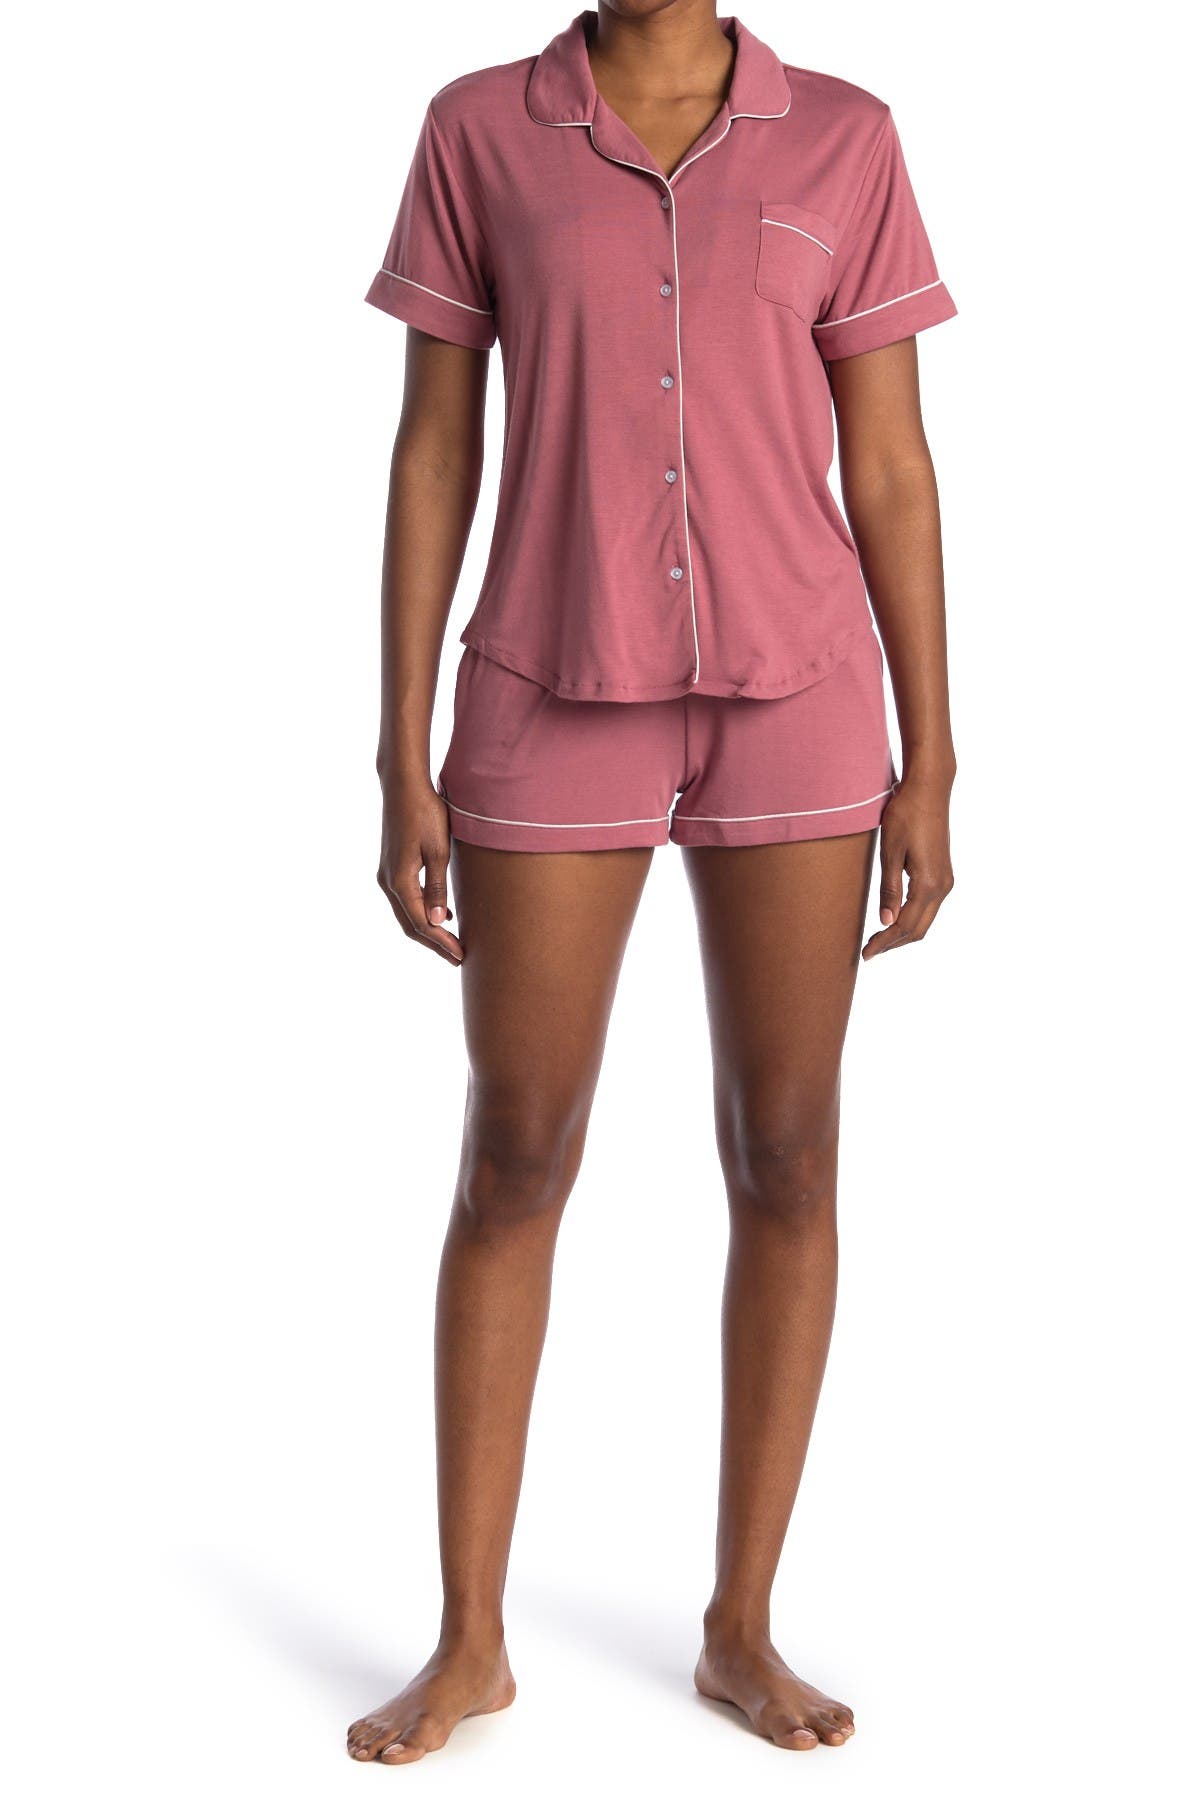 Flora By Flora Nikrooz Annie Shirt & Shorts 2-piece Pajama Set In Dark Pink1